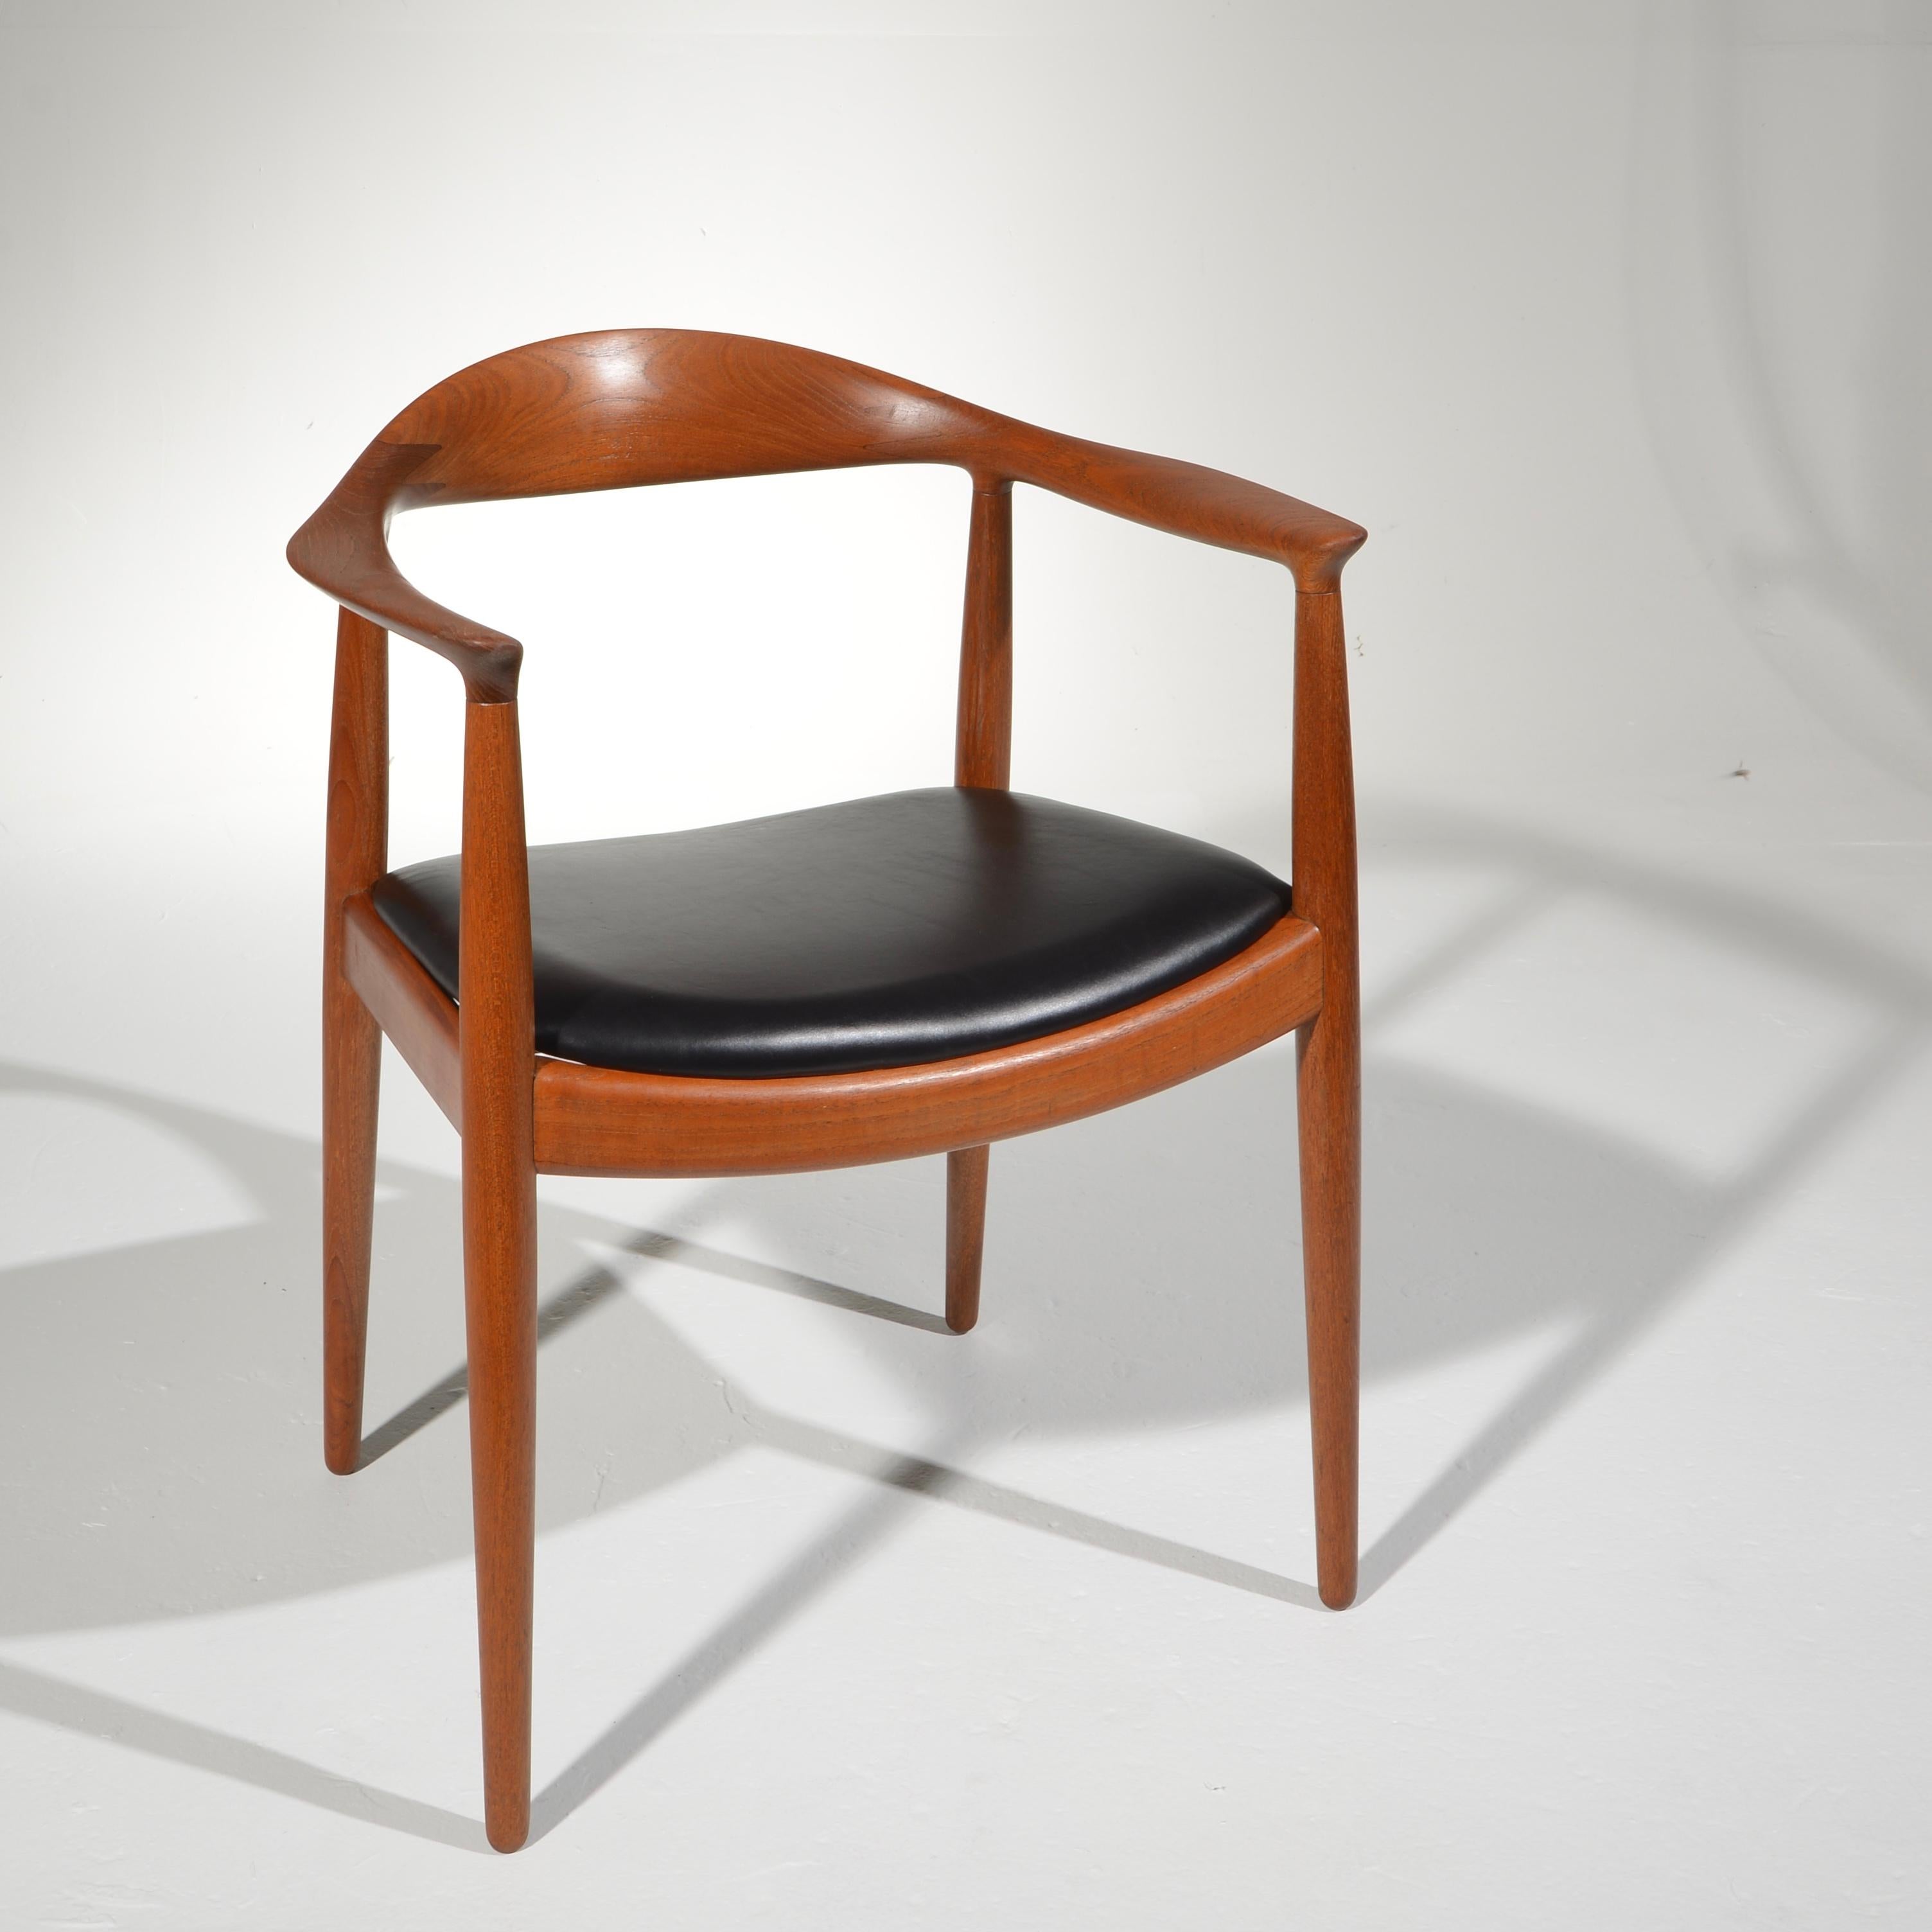 Nous avons le plaisir de vous proposer 4 chaises Hans Wegner JH-503 conçues en 1949 et produites par Johannes Hansen. Construction en teck massif ancien entièrement restaurée. Estampillé avec la marque du fabricant. Actuellement, nous en avons 10 en